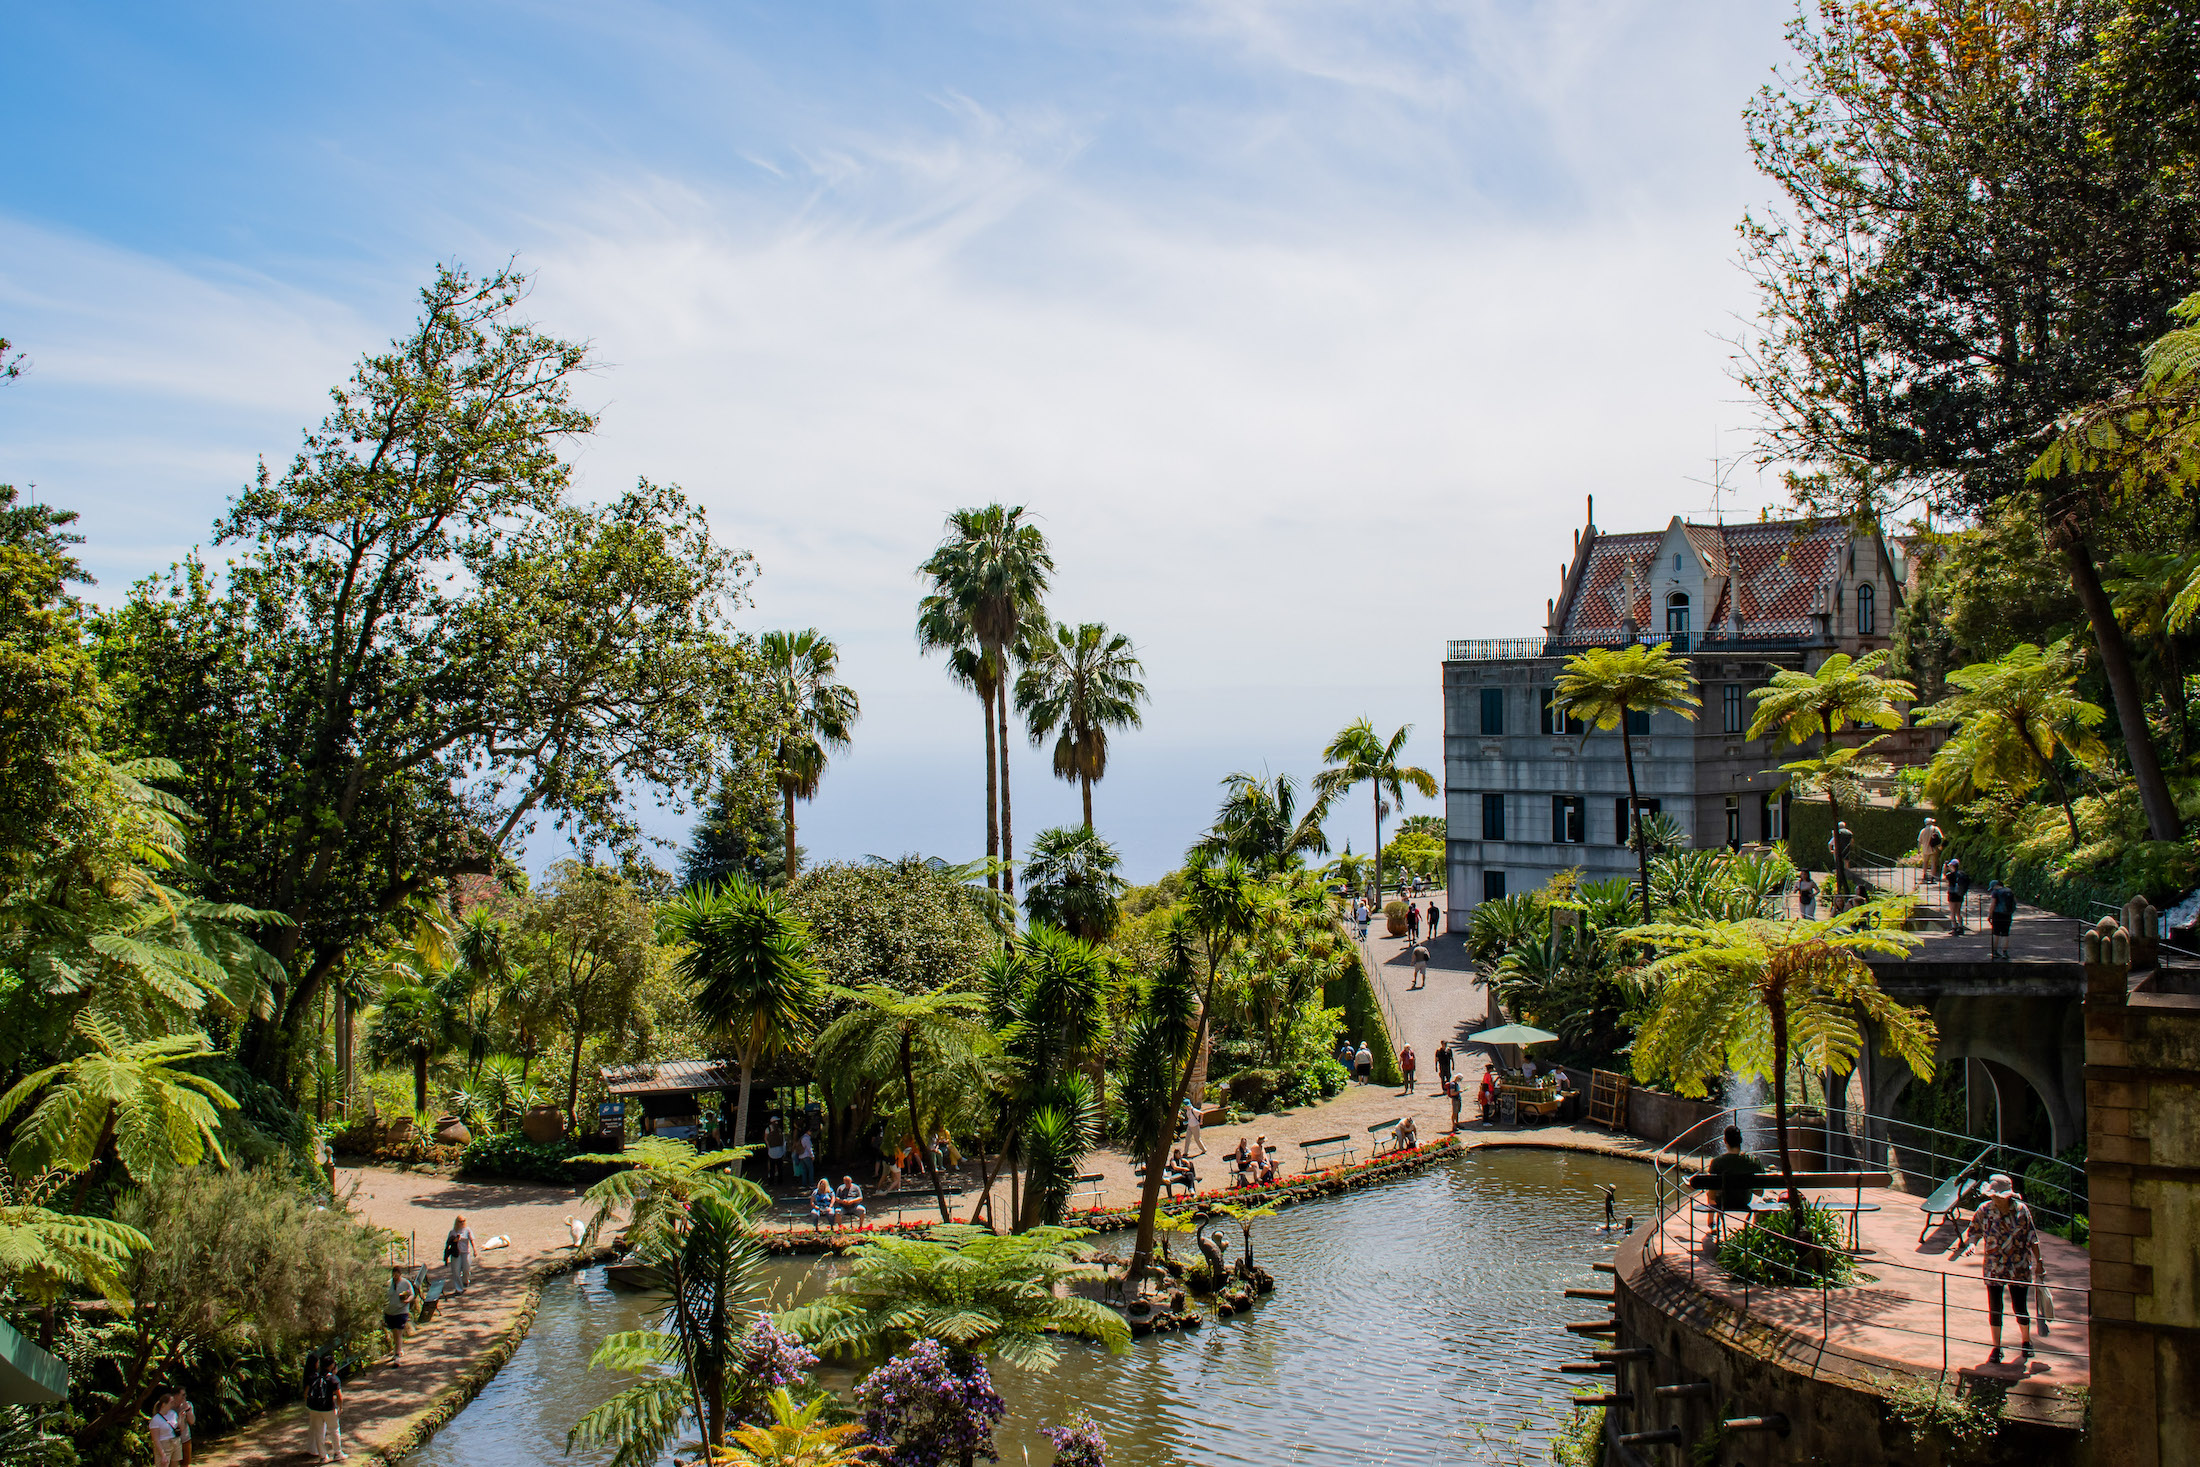 De Monte Palace Tropical Garden is ook een heerlijke plek om te genieten van rust en al het moois om je heen